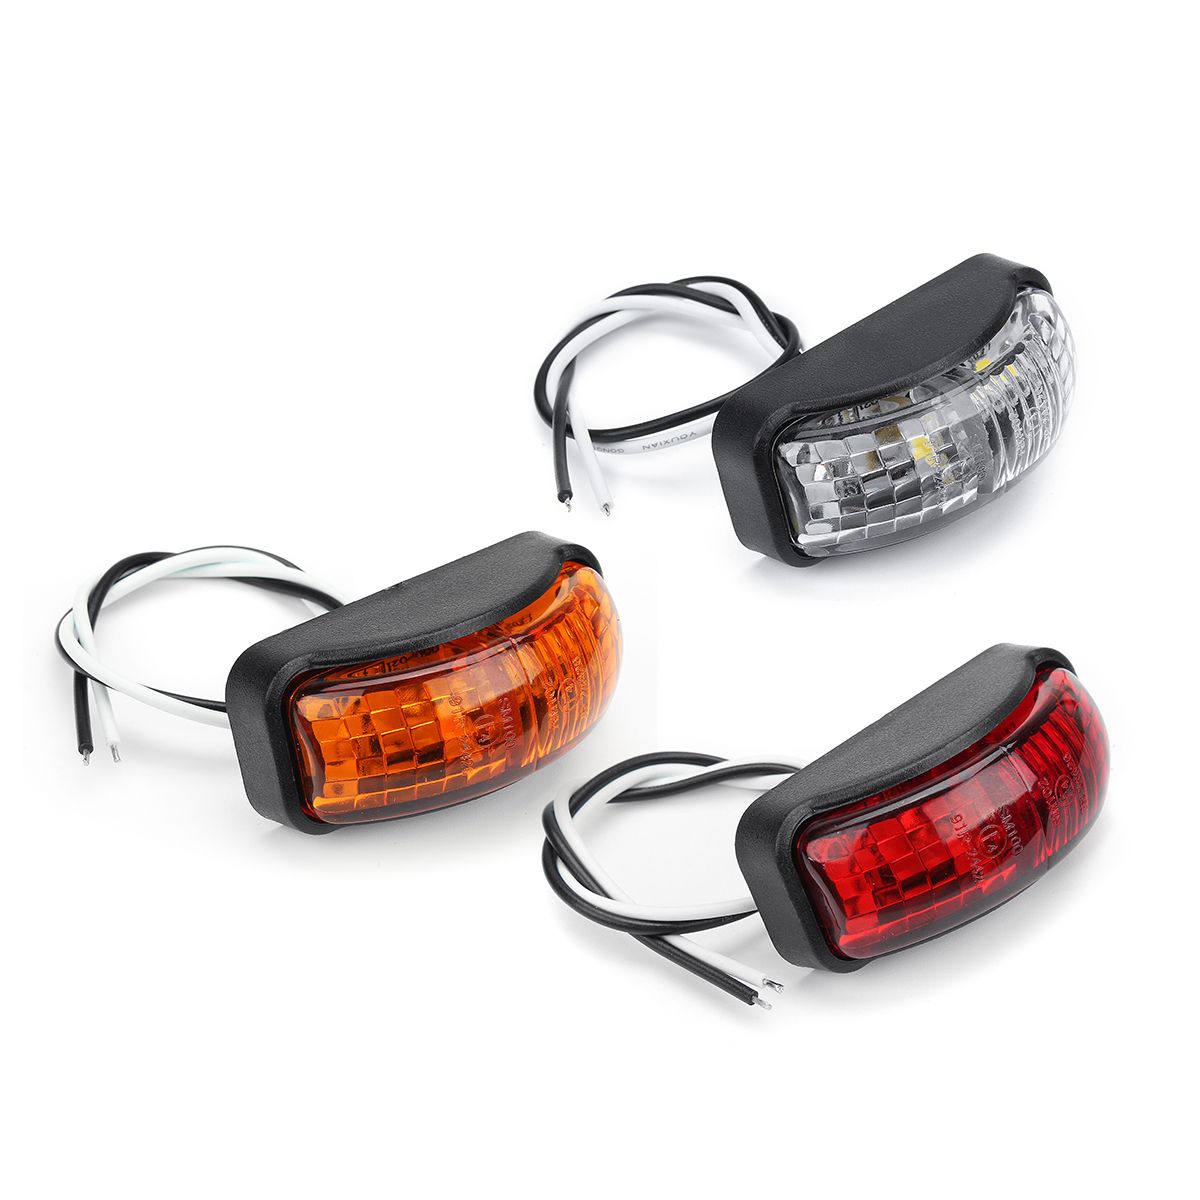 2-SMD-LED-Side-Marker-Lights-Clearance-Lamp-12-30V-54x24mm-E4-RedYellowWhite-for-Truck-Trailer-Van-1428797